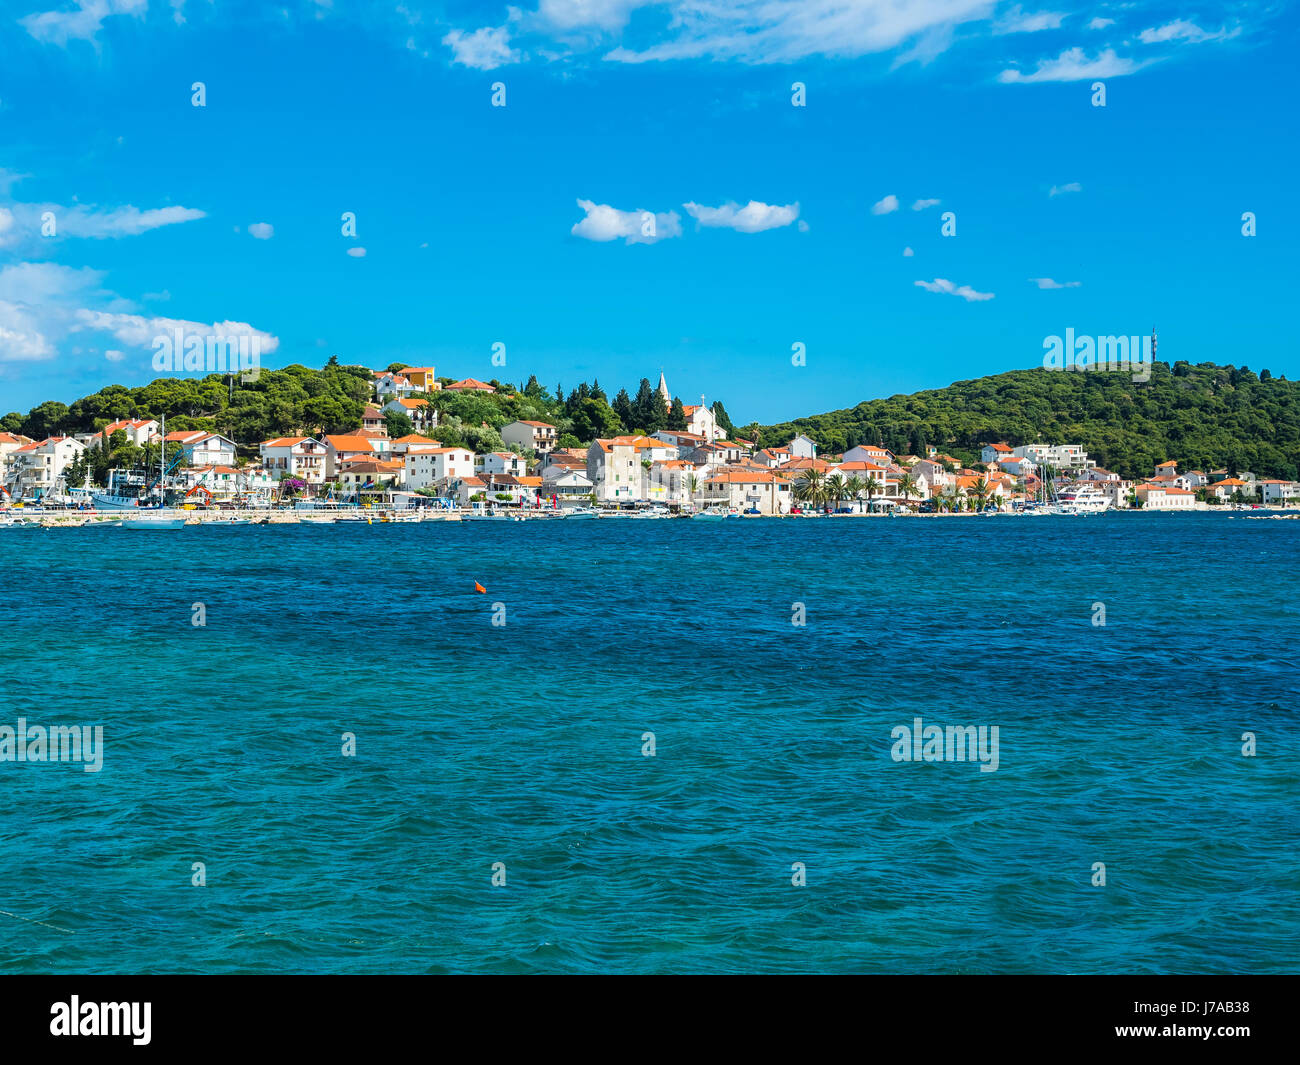 Kroatien, Dalmatien, Dividir Adriatisches Meer, Uferpromenade Split Foto de stock